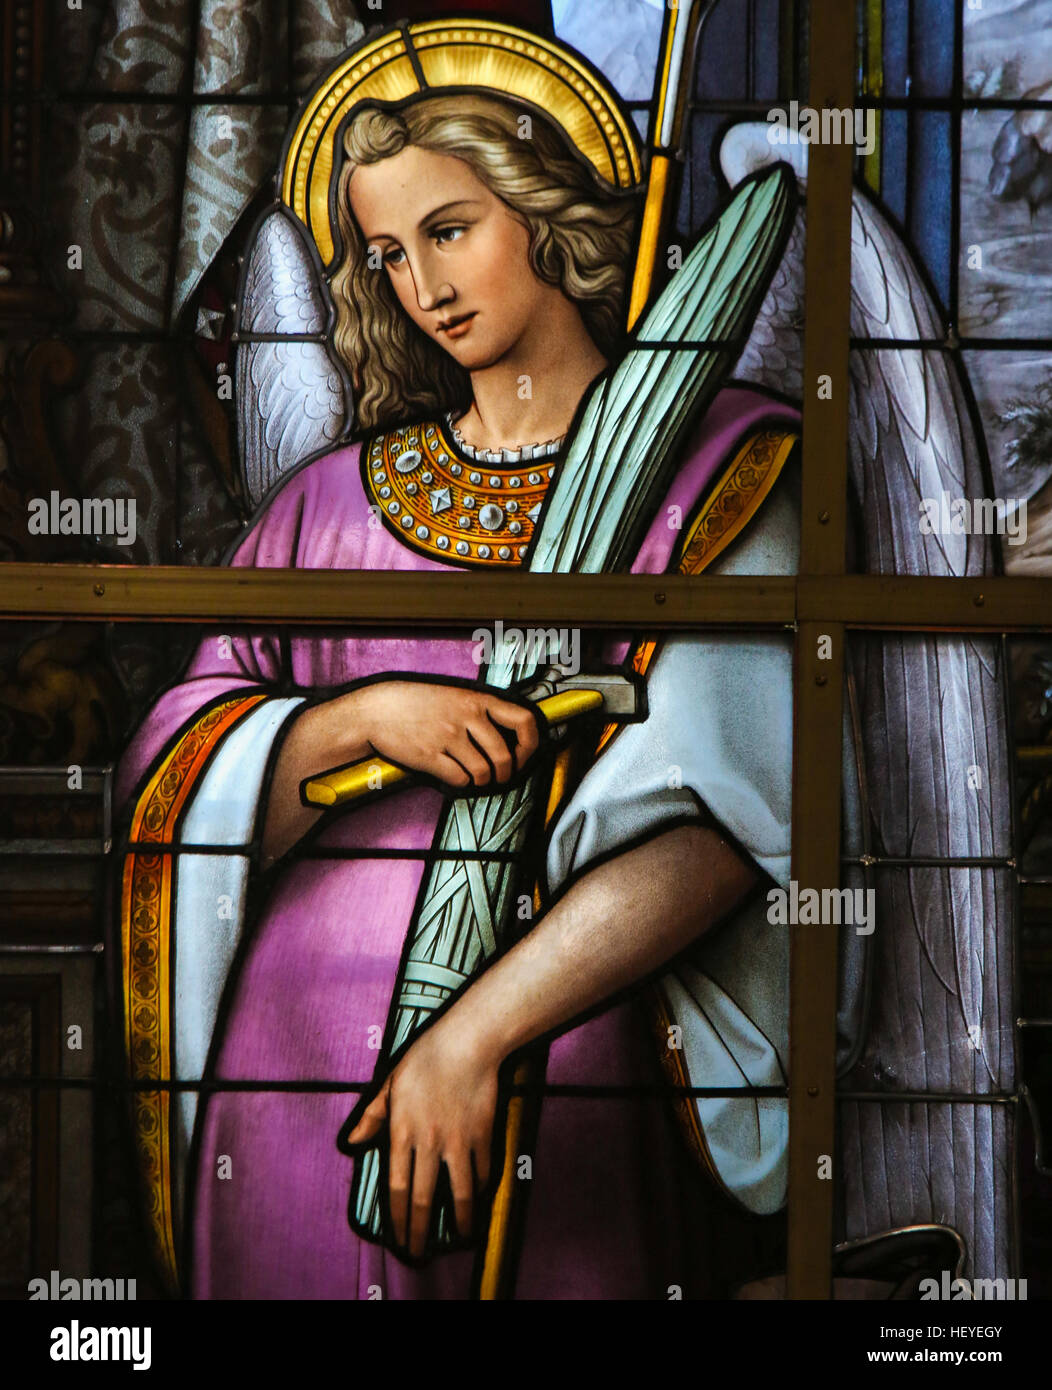 Vitraux dans l'église Saint Nicolas, Gand, Belgique, représentant une allégorie sur les souffrances de Jésus, un Ange tenant l'Arma Christi ou l'Inst Banque D'Images